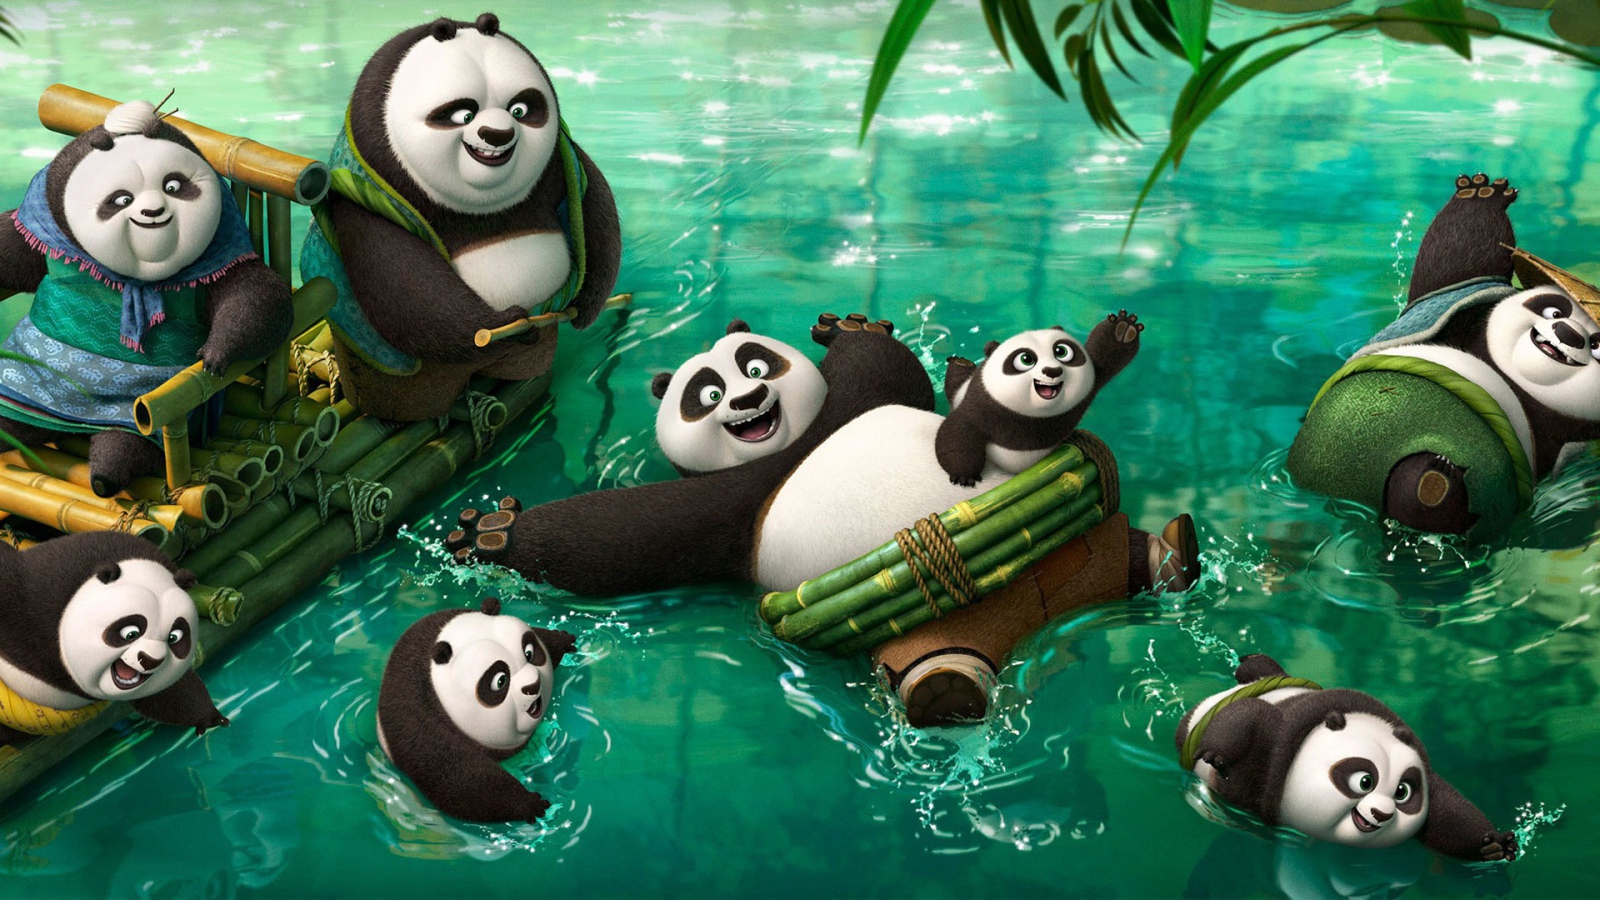 Панды резвятся в воде, мультфильм Кунг-фу панда